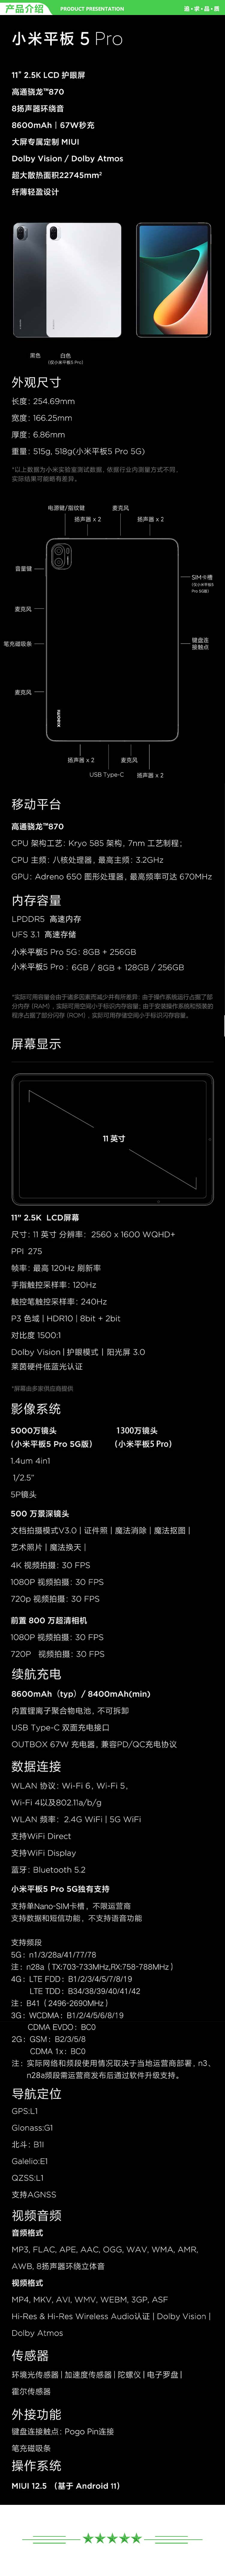 小米 xiaomi 平板5 Pro 平板电脑（11英寸2.5K高清 120Hz 骁龙860 8G+256GB 67W快充 杜比影音娱乐办公 黑色）.jpg